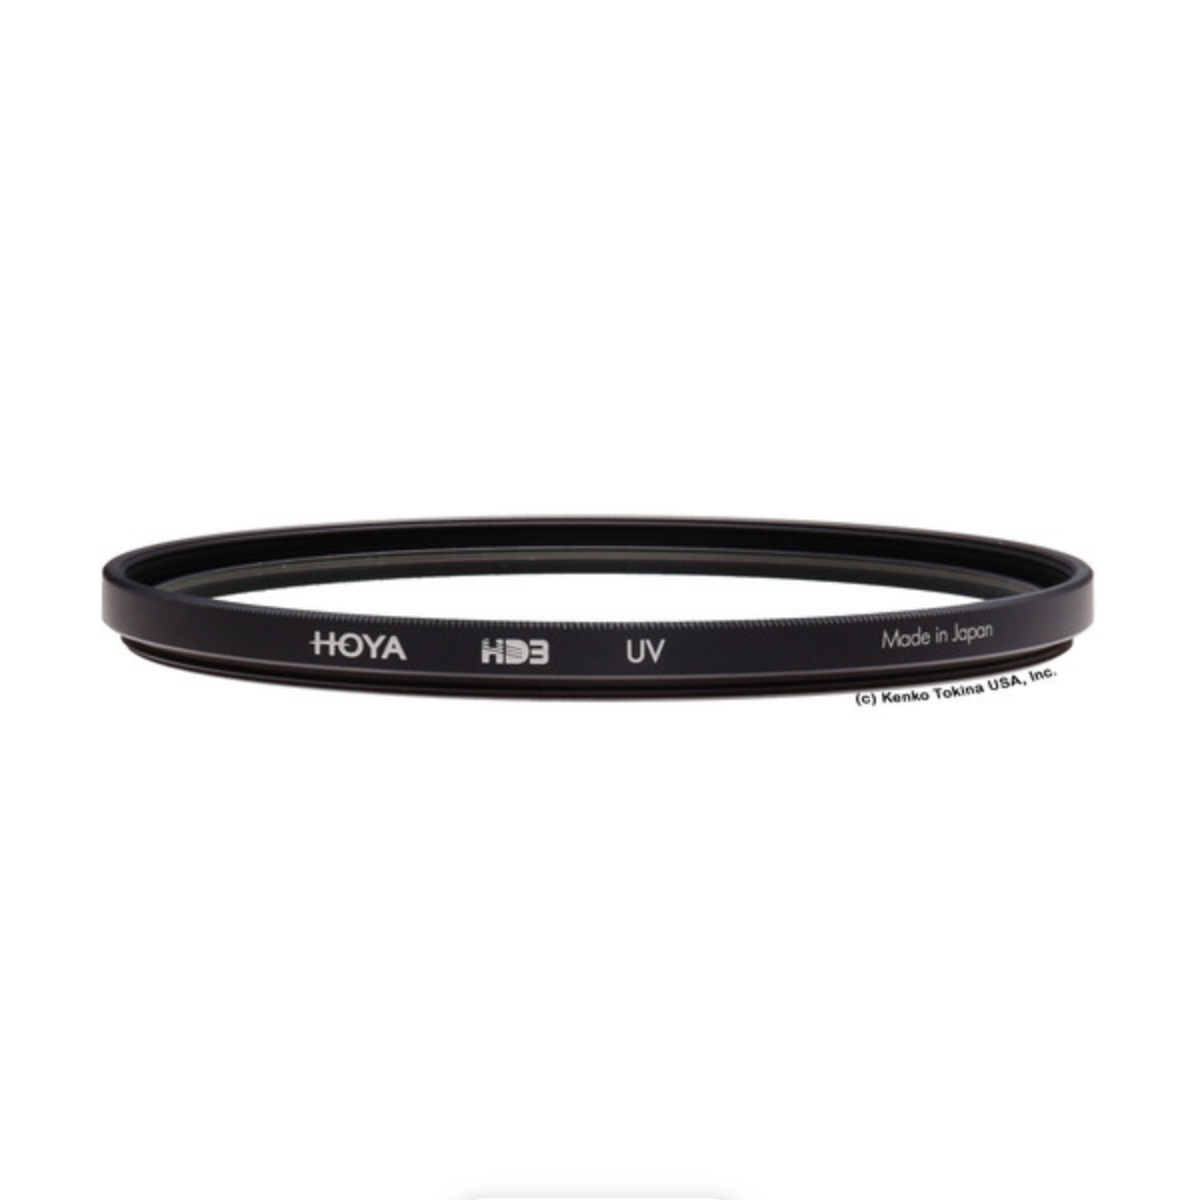 Hoya HD3 UV Filter - 82mm